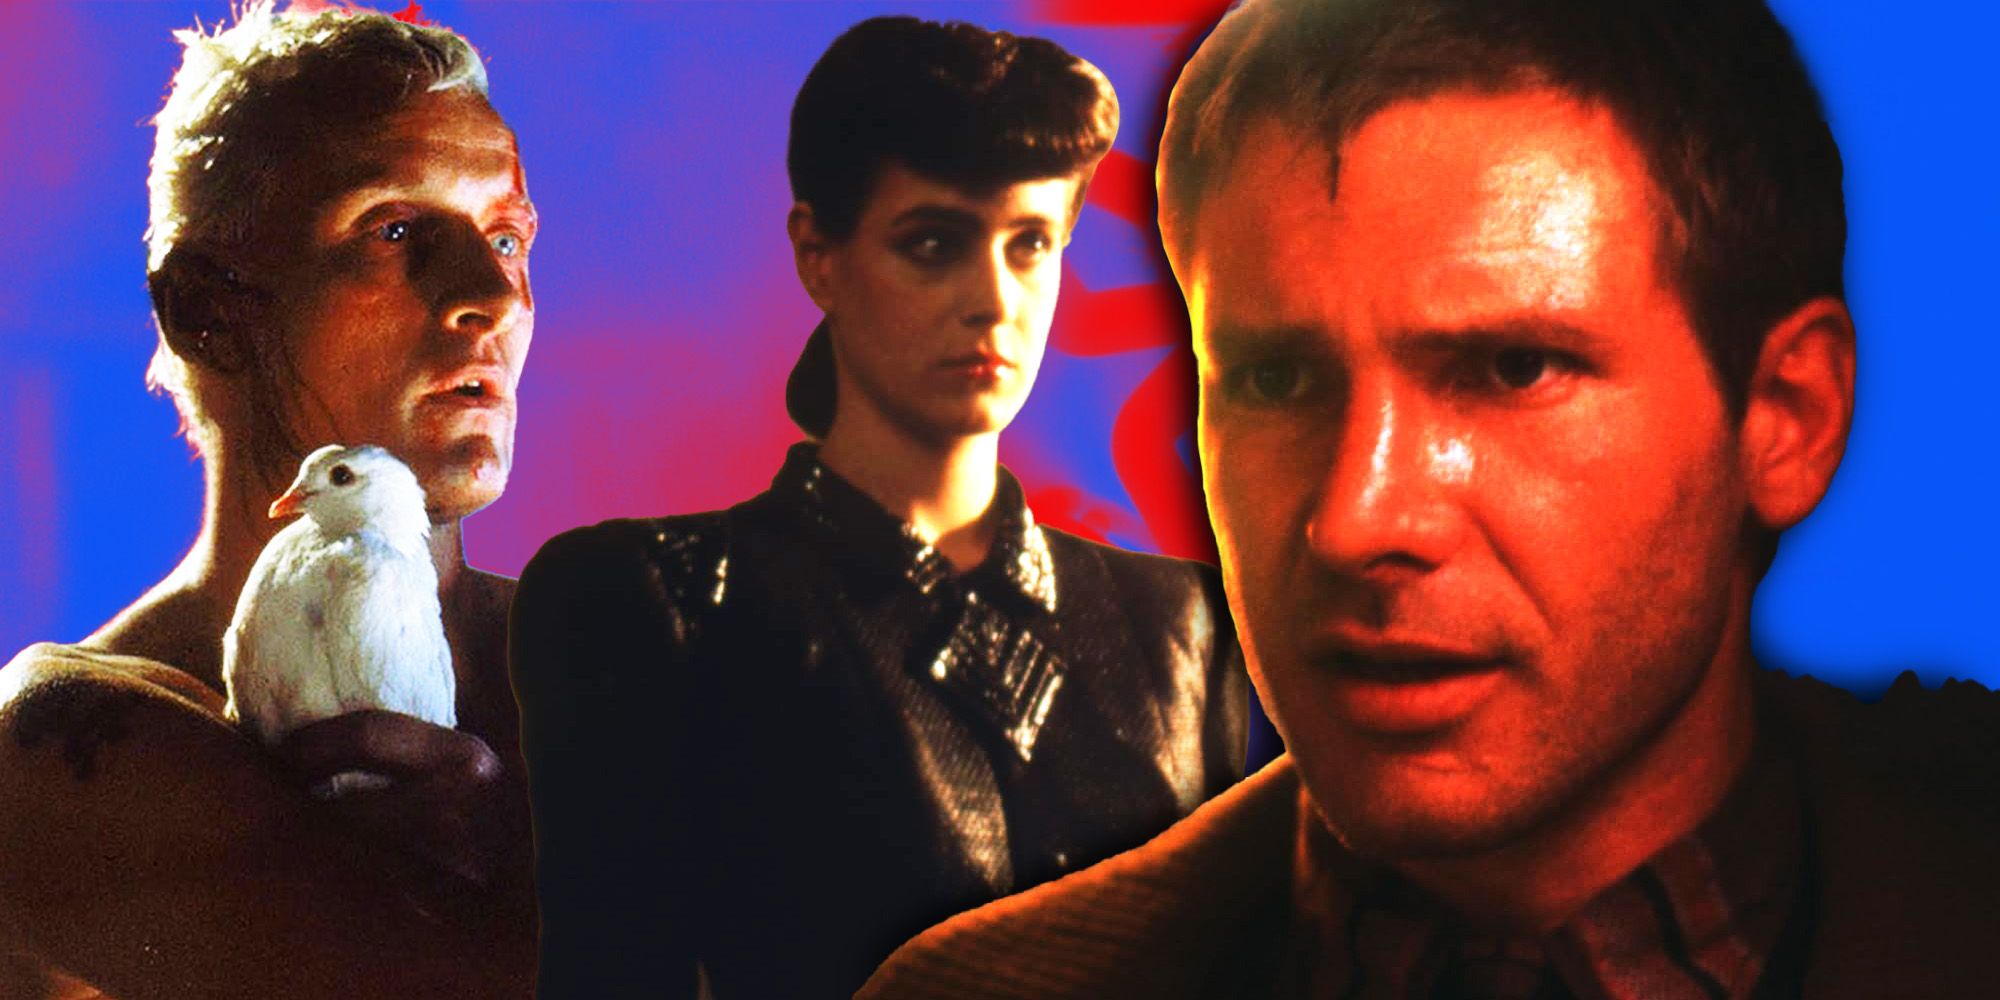 El autor de Blade Runner quería que esta estrella de rock de los años 60 interpretara a Deckard en lugar de Harrison Ford